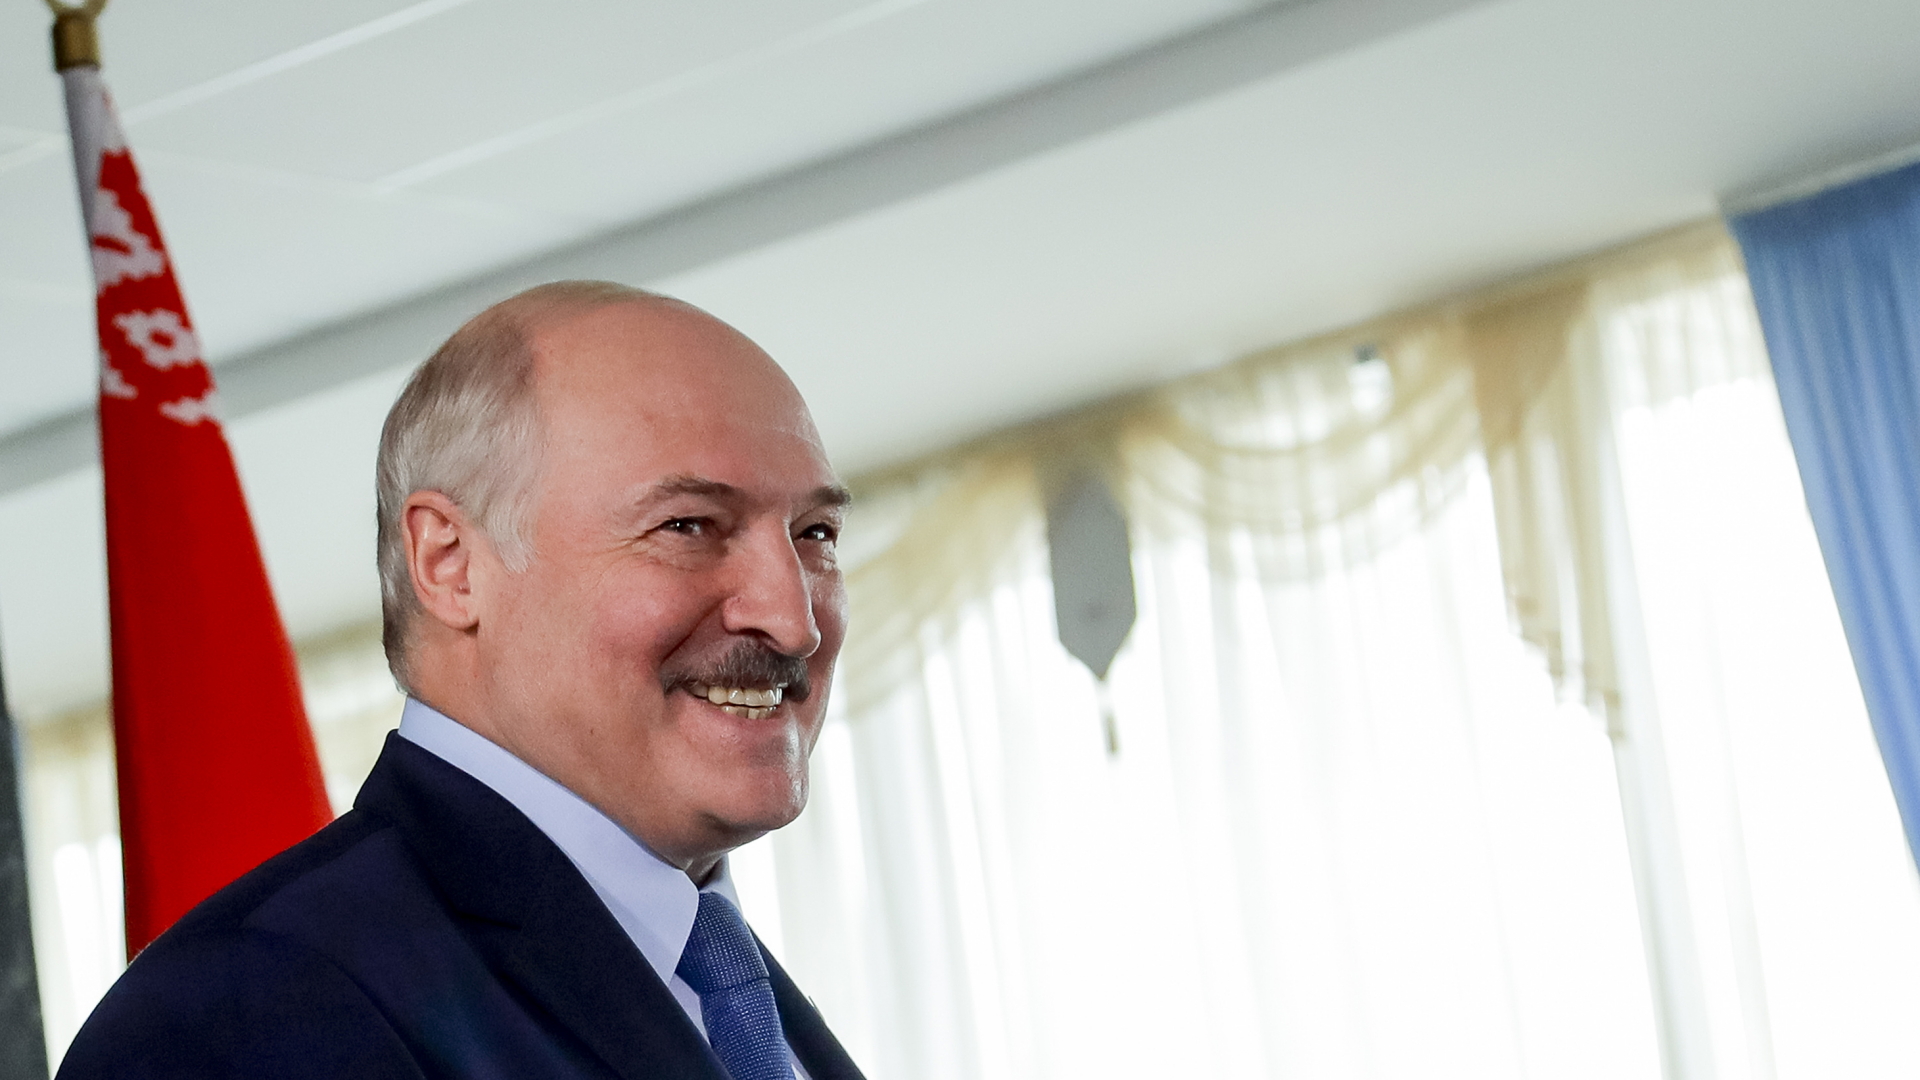 Der belarussische Präsident Alexander Lukaschenko grinst am Wahltag in die Kameras. | dpa